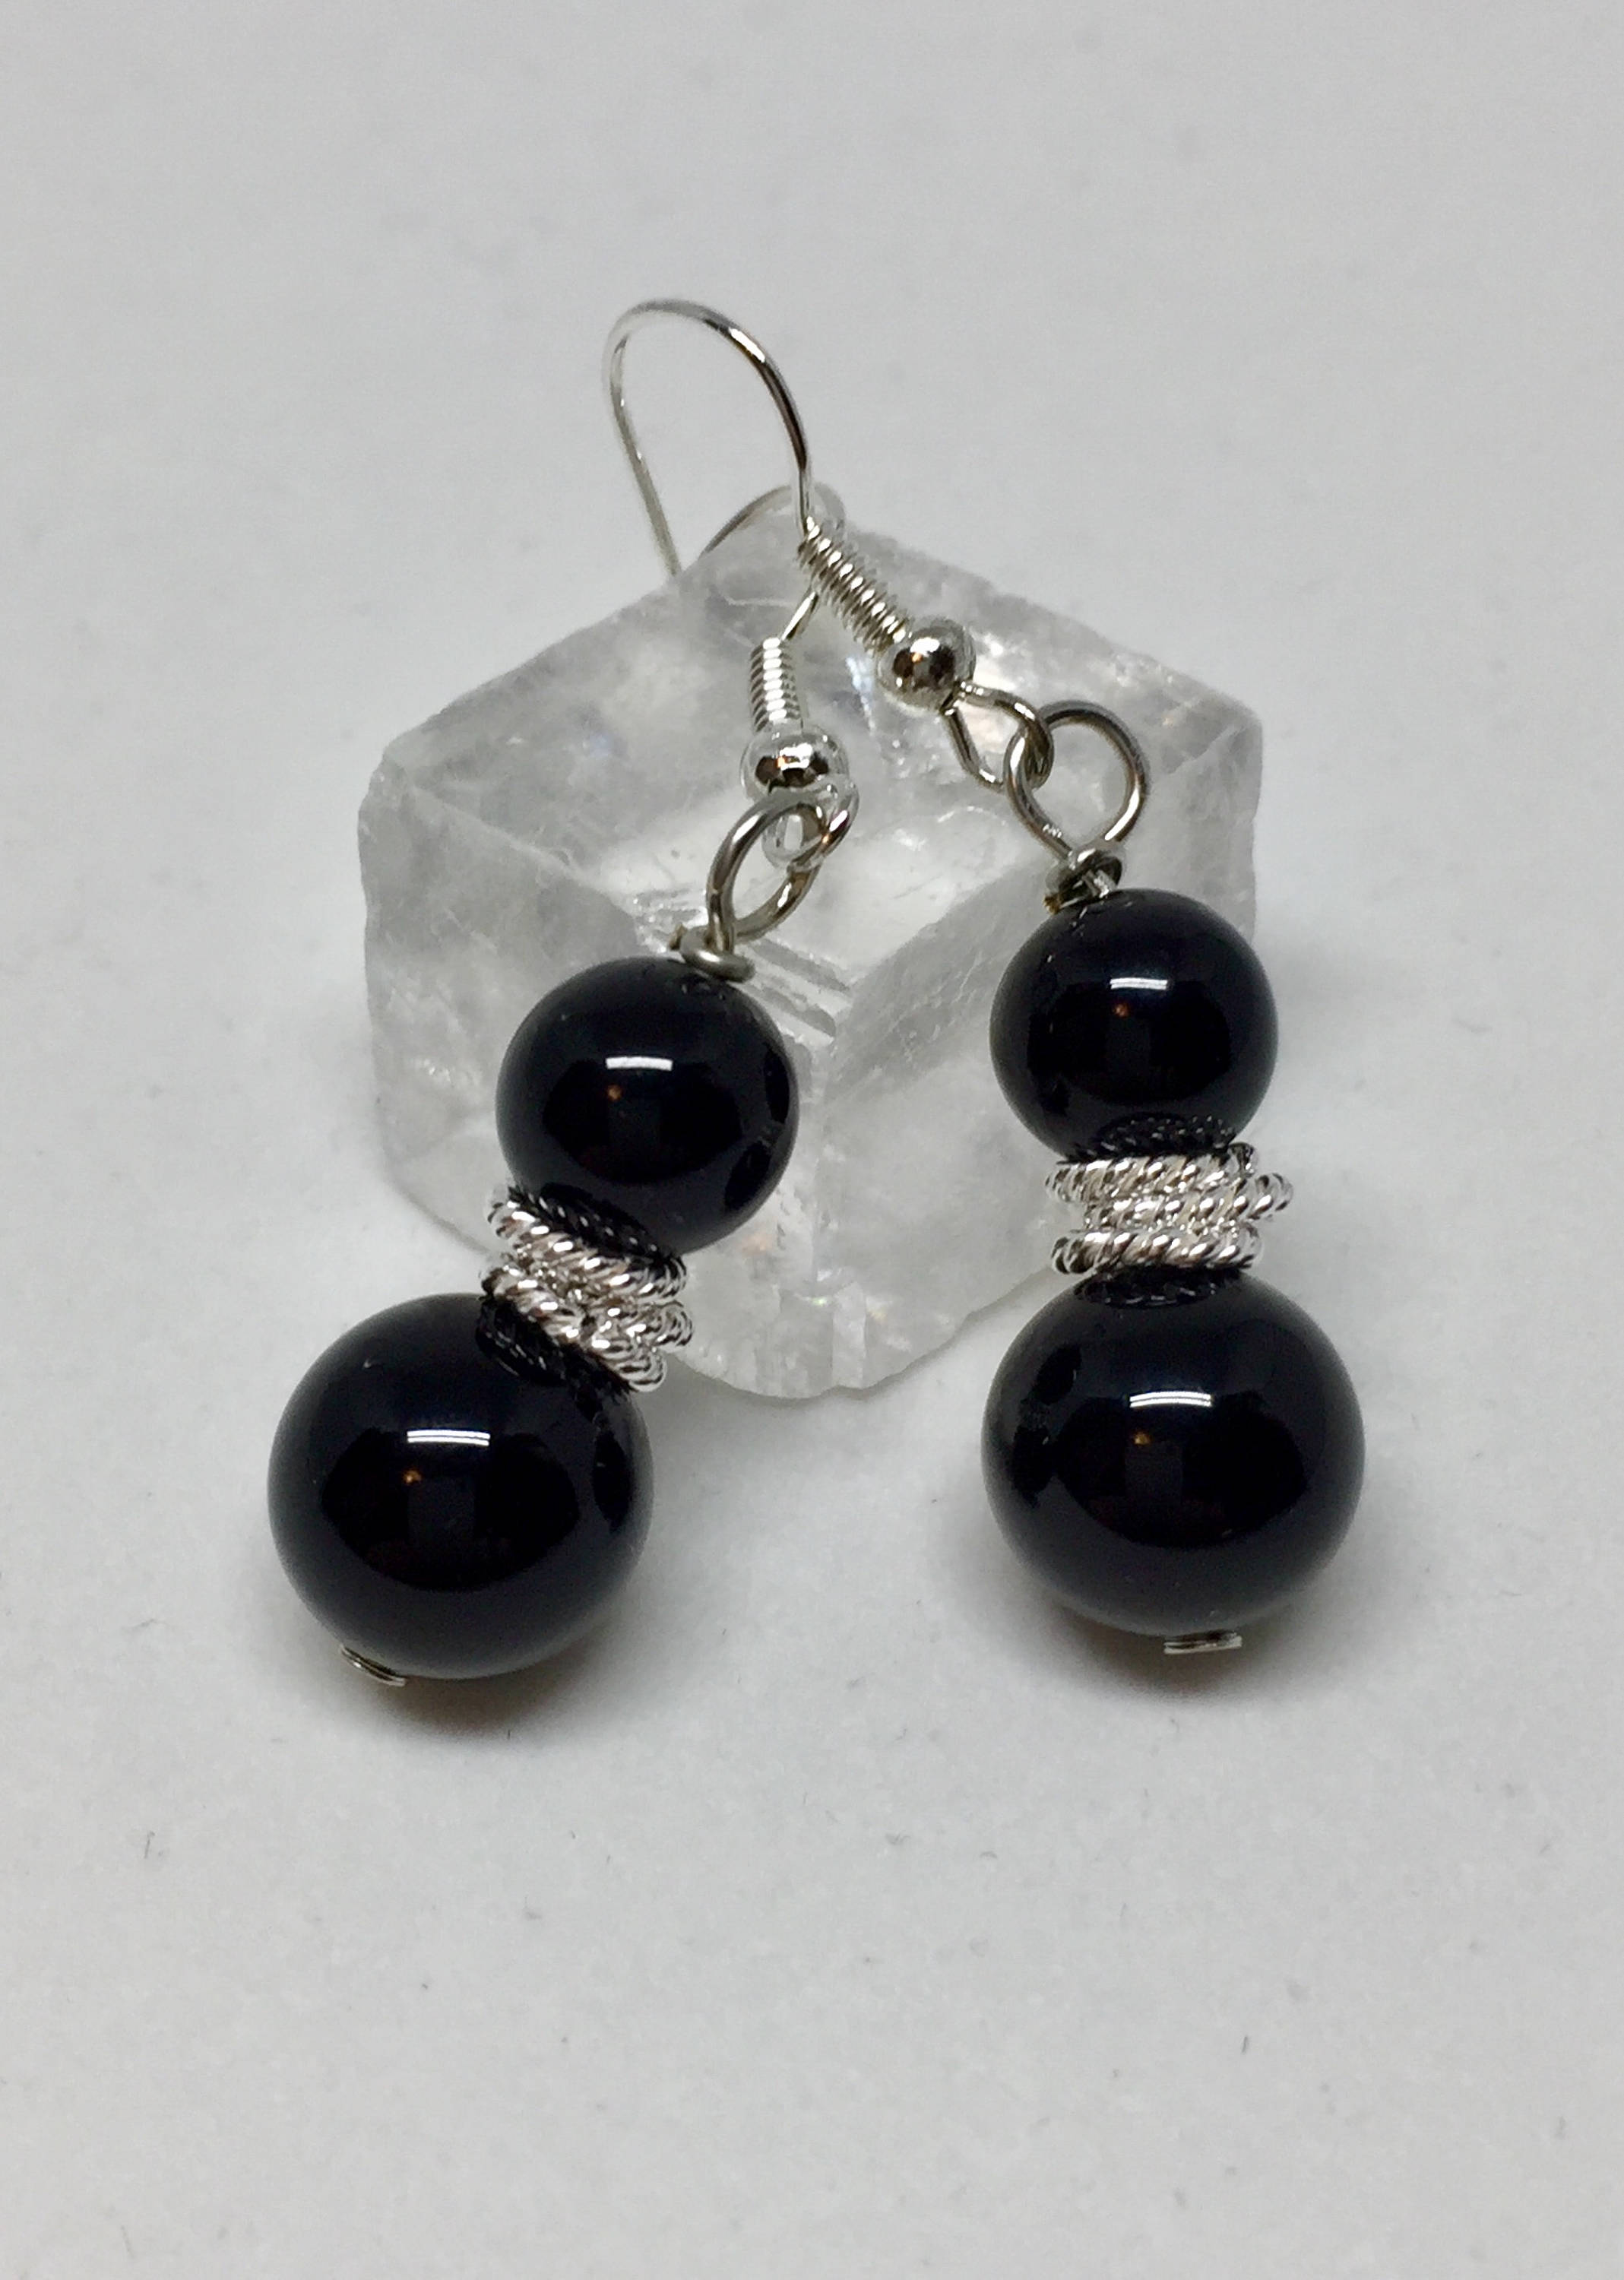 Black onyx silver earrings black healing stone jewelry | Etsy